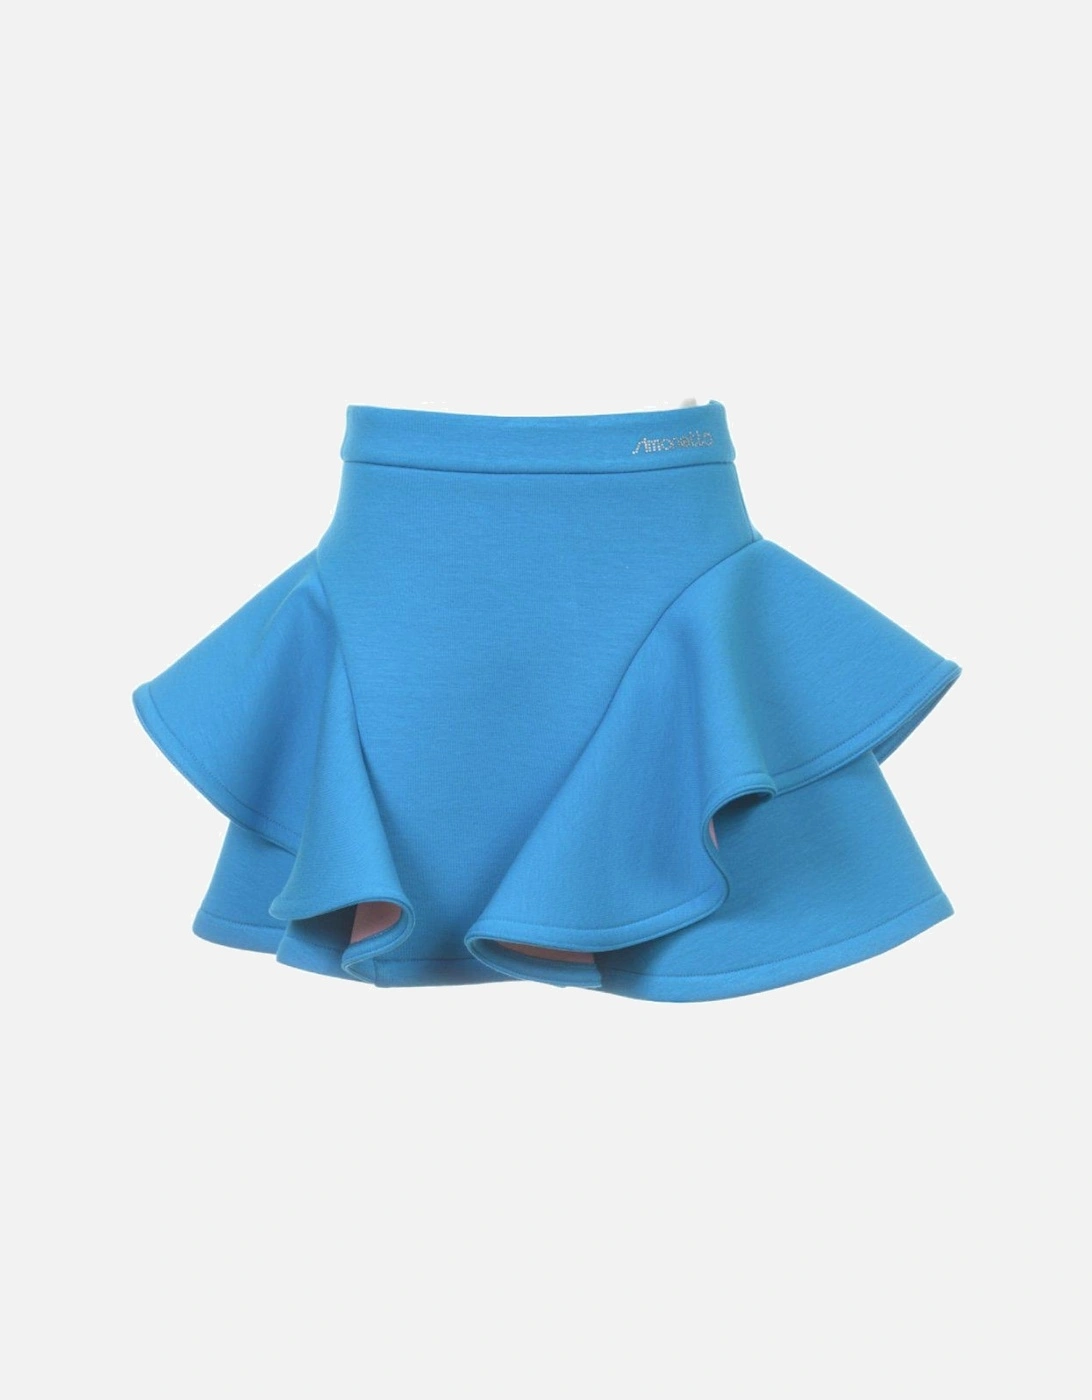 Girls Blue Frill Skirt, 3 of 2